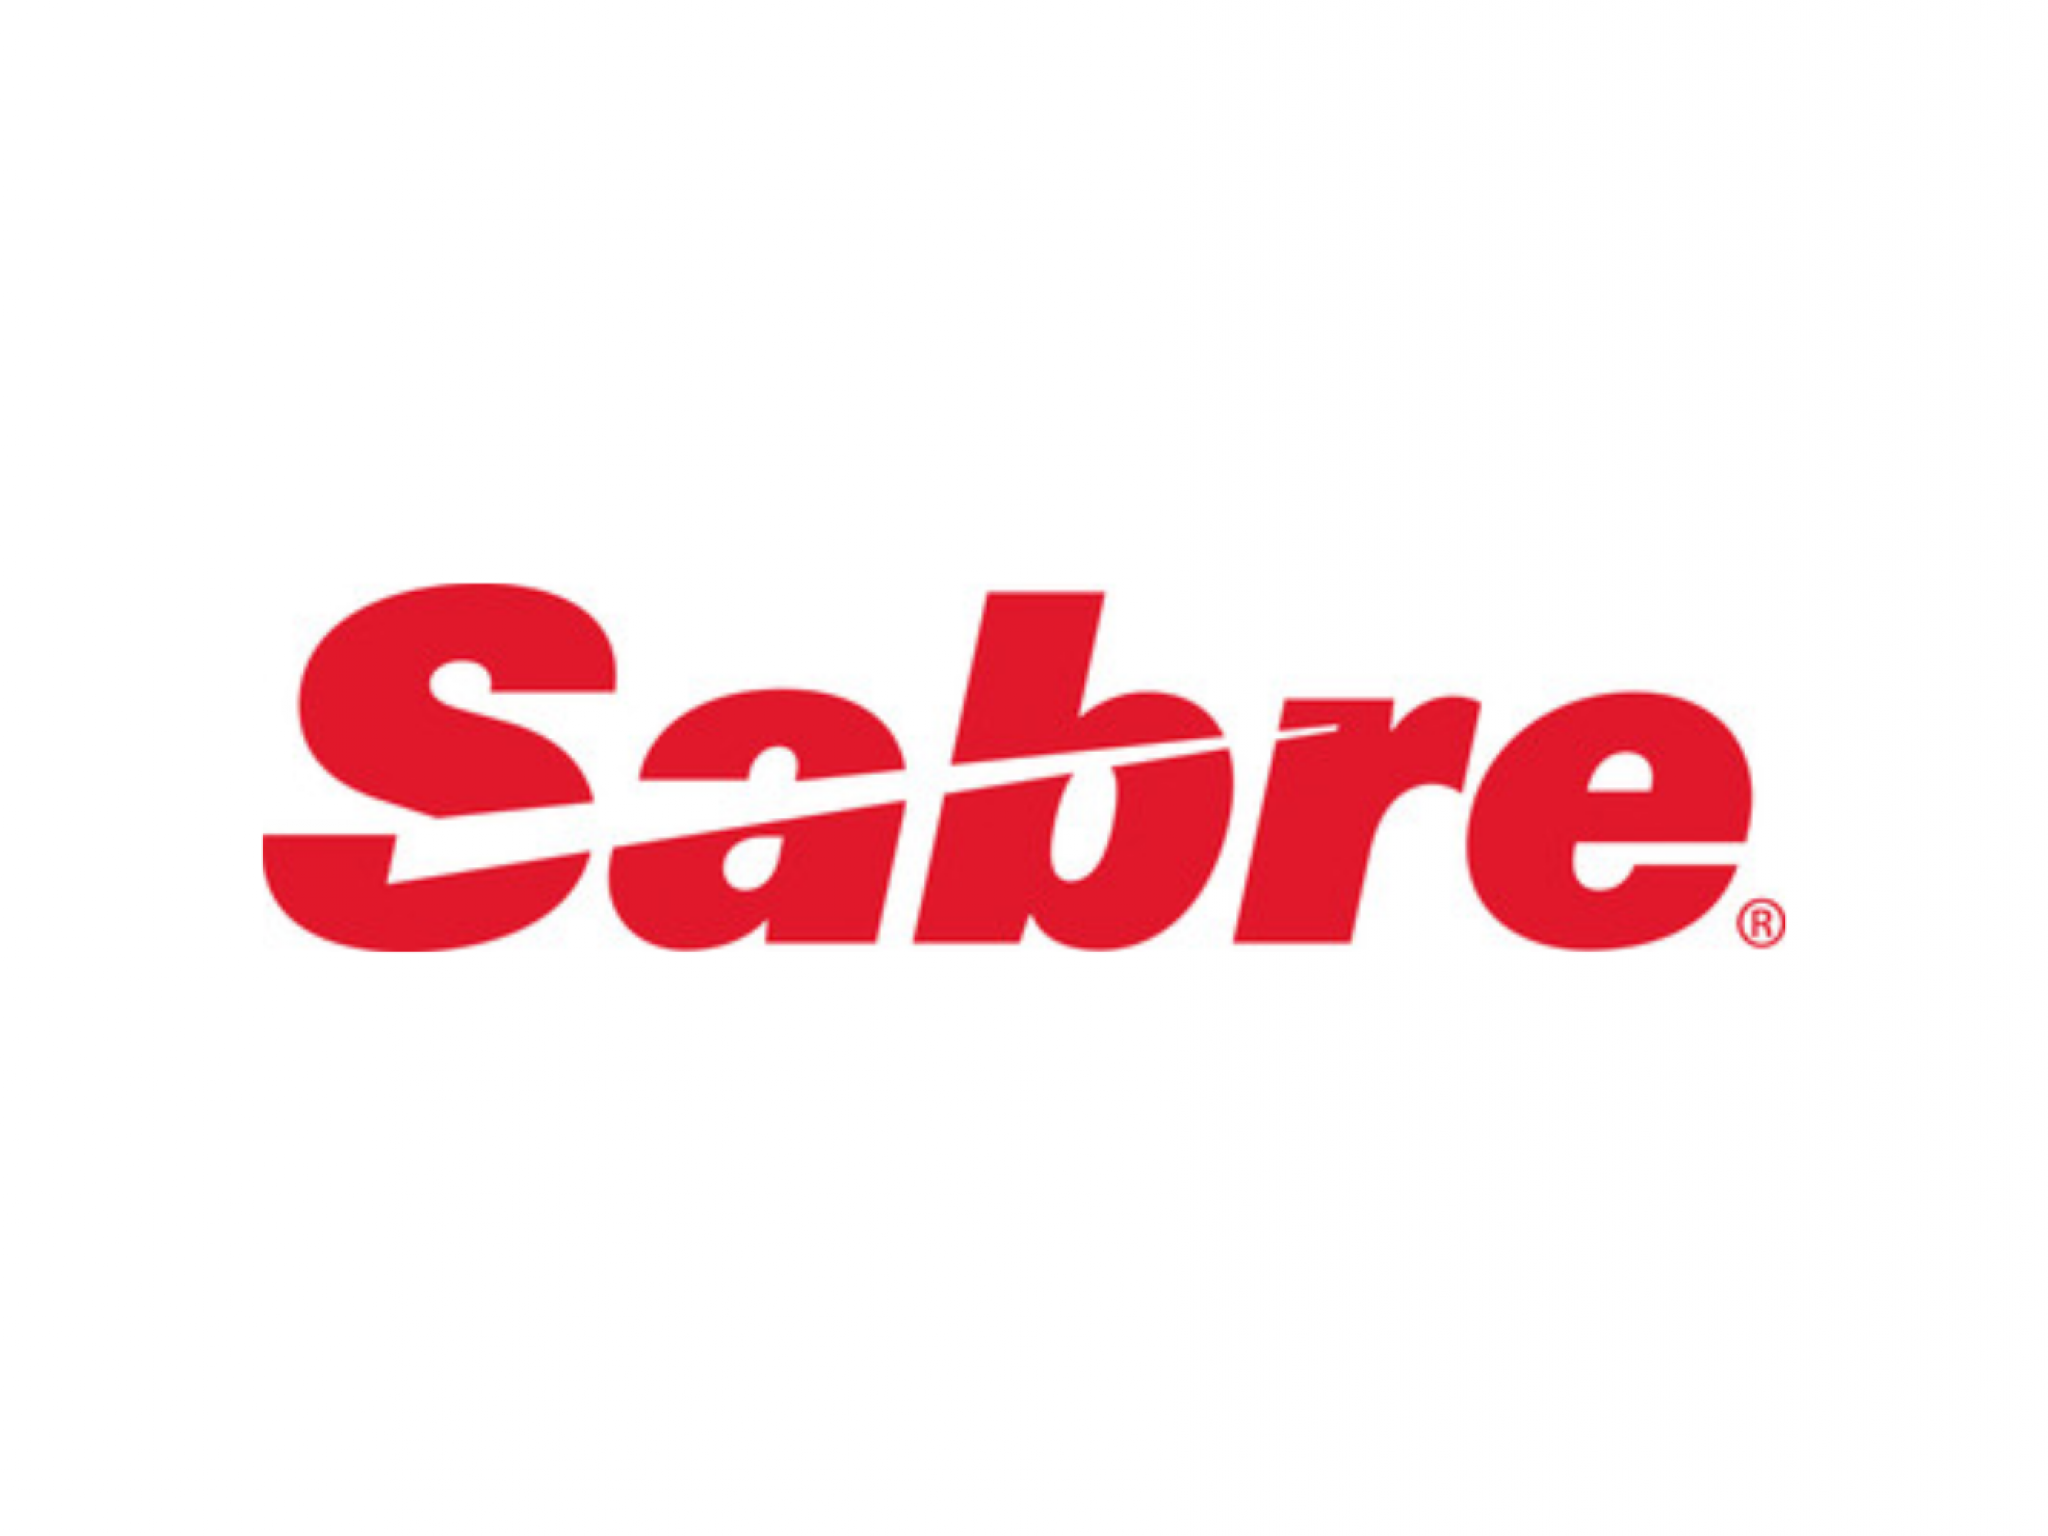 Sabre étend son partenariat avec Virgin Australia grâce à sa solution Travel AI - Goliaths actualités boursière